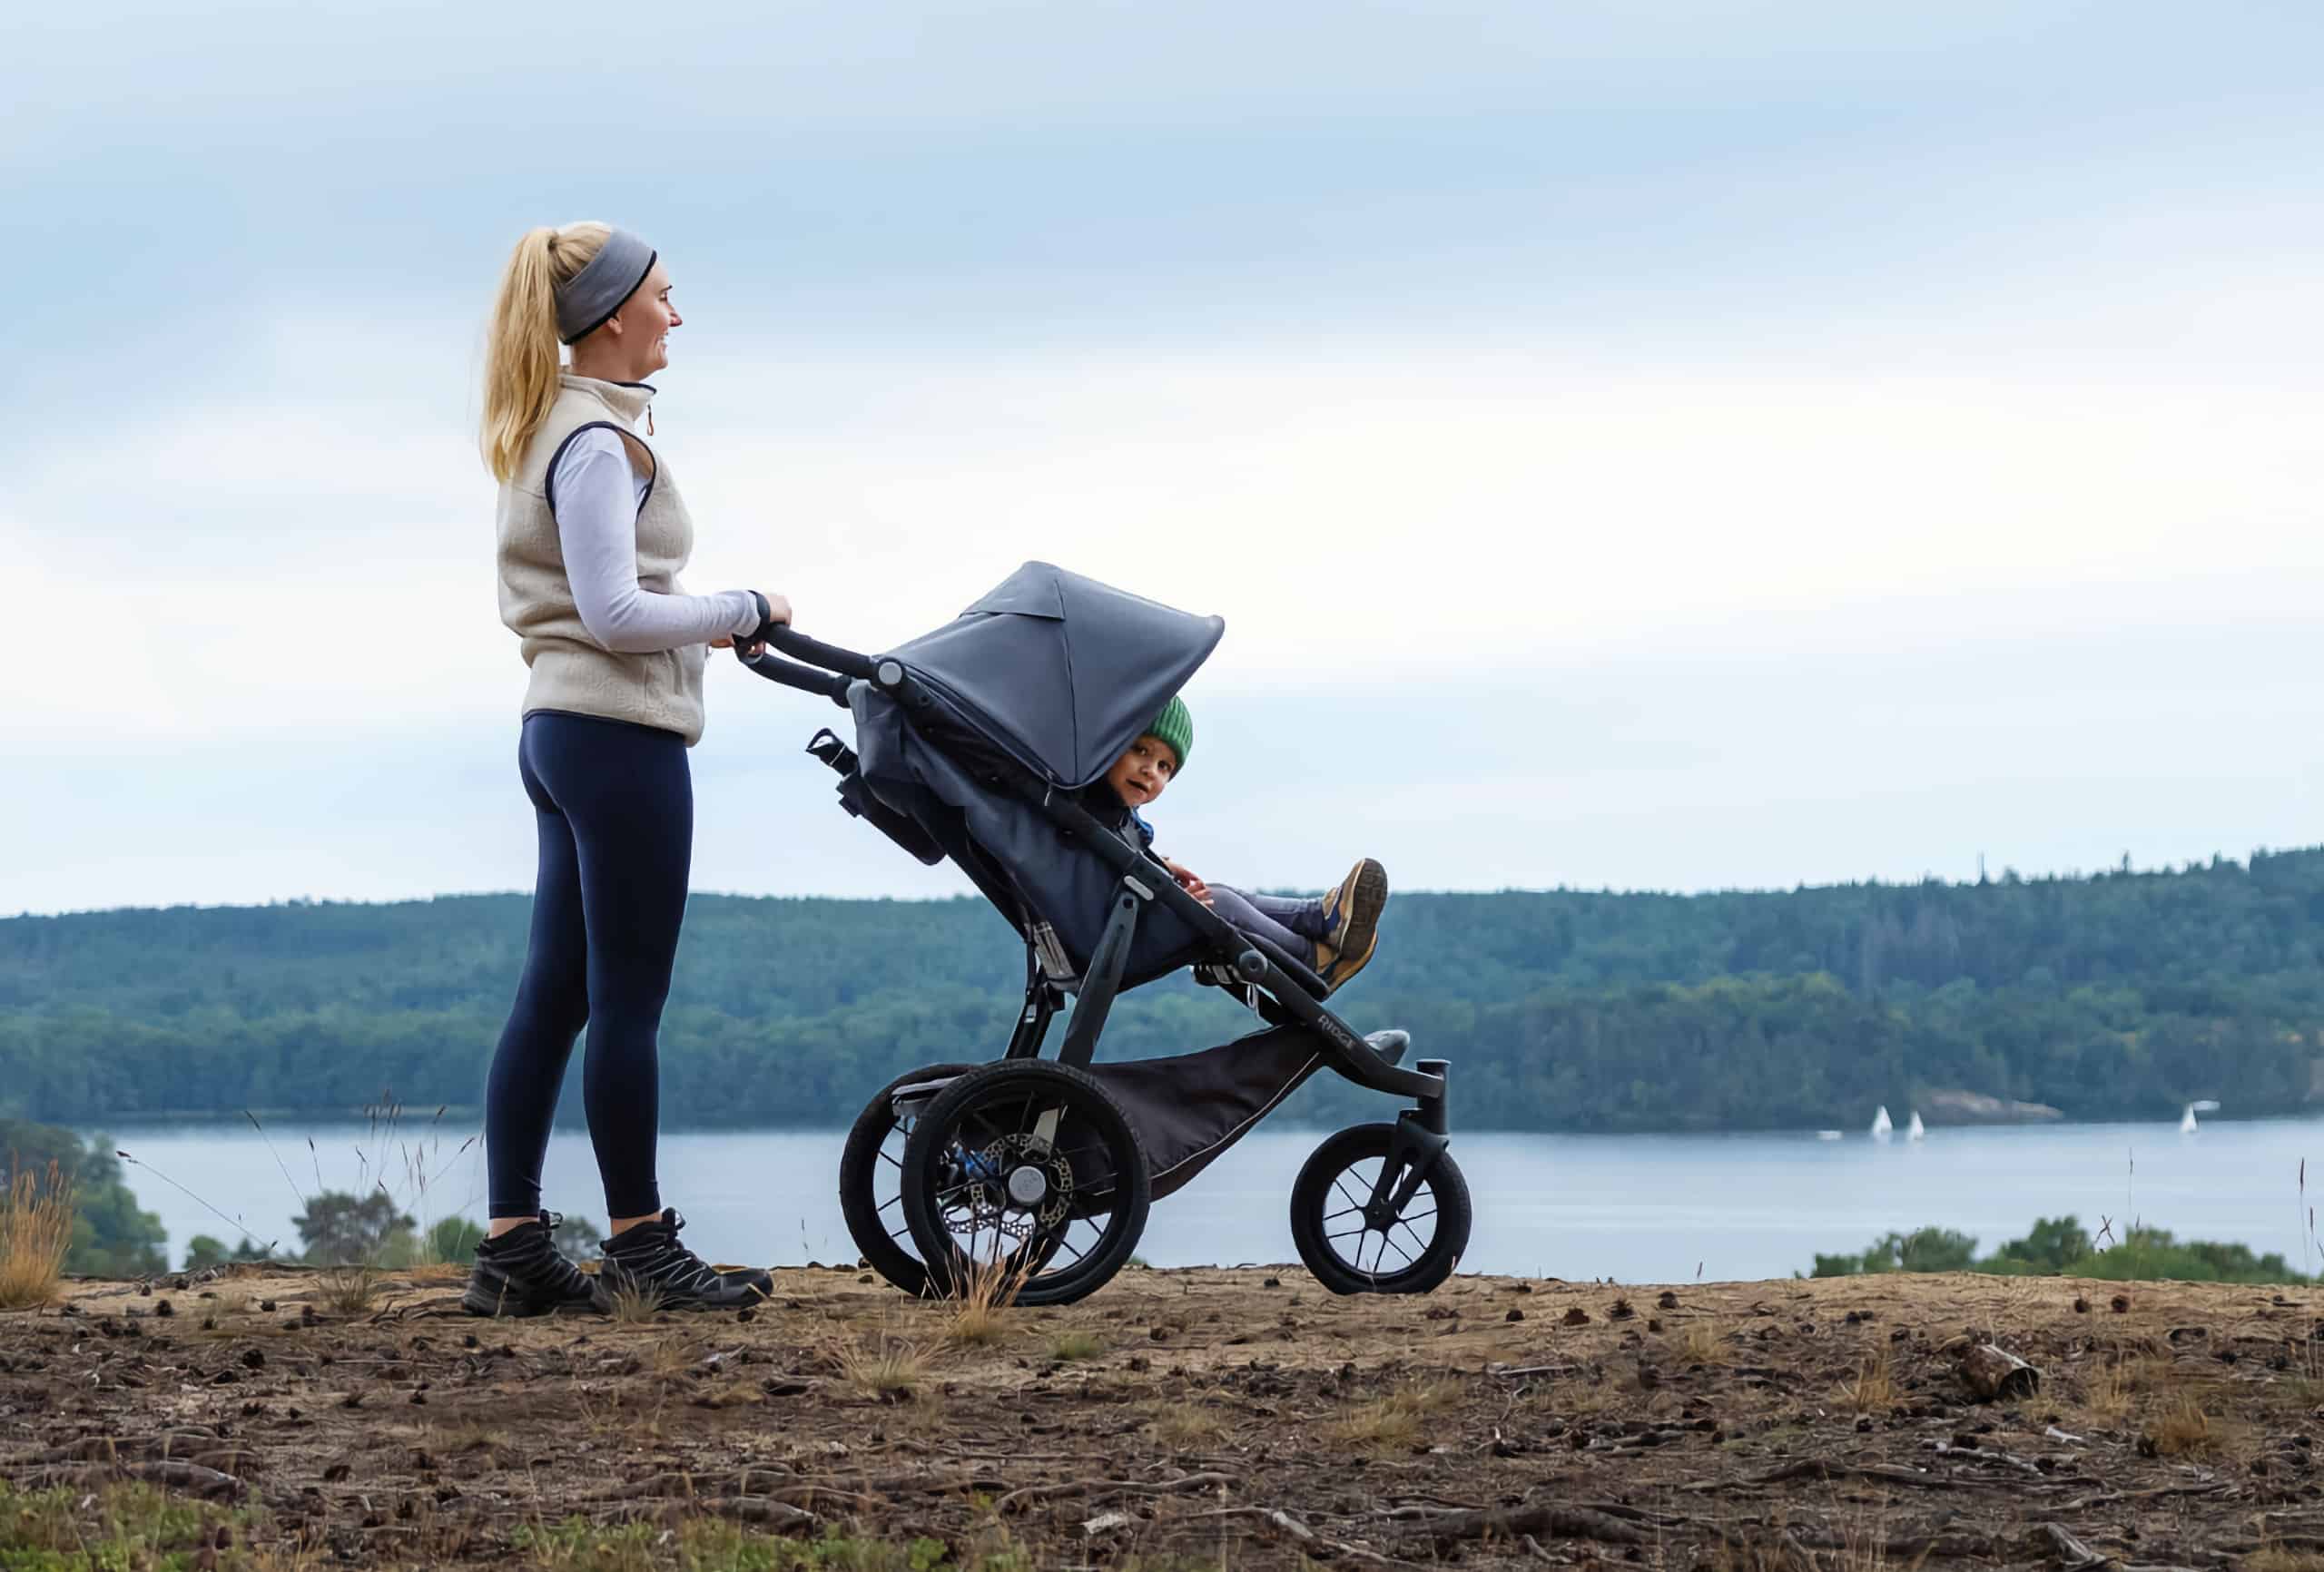 Reirei - Logpart är samarbetspartner med Reirei. Logpart tillhandahåller 3pl-lösningar. I bild en kvinna, sportigt klädd, med en barnvagn. I barnvagnen tittar en pojke fram.